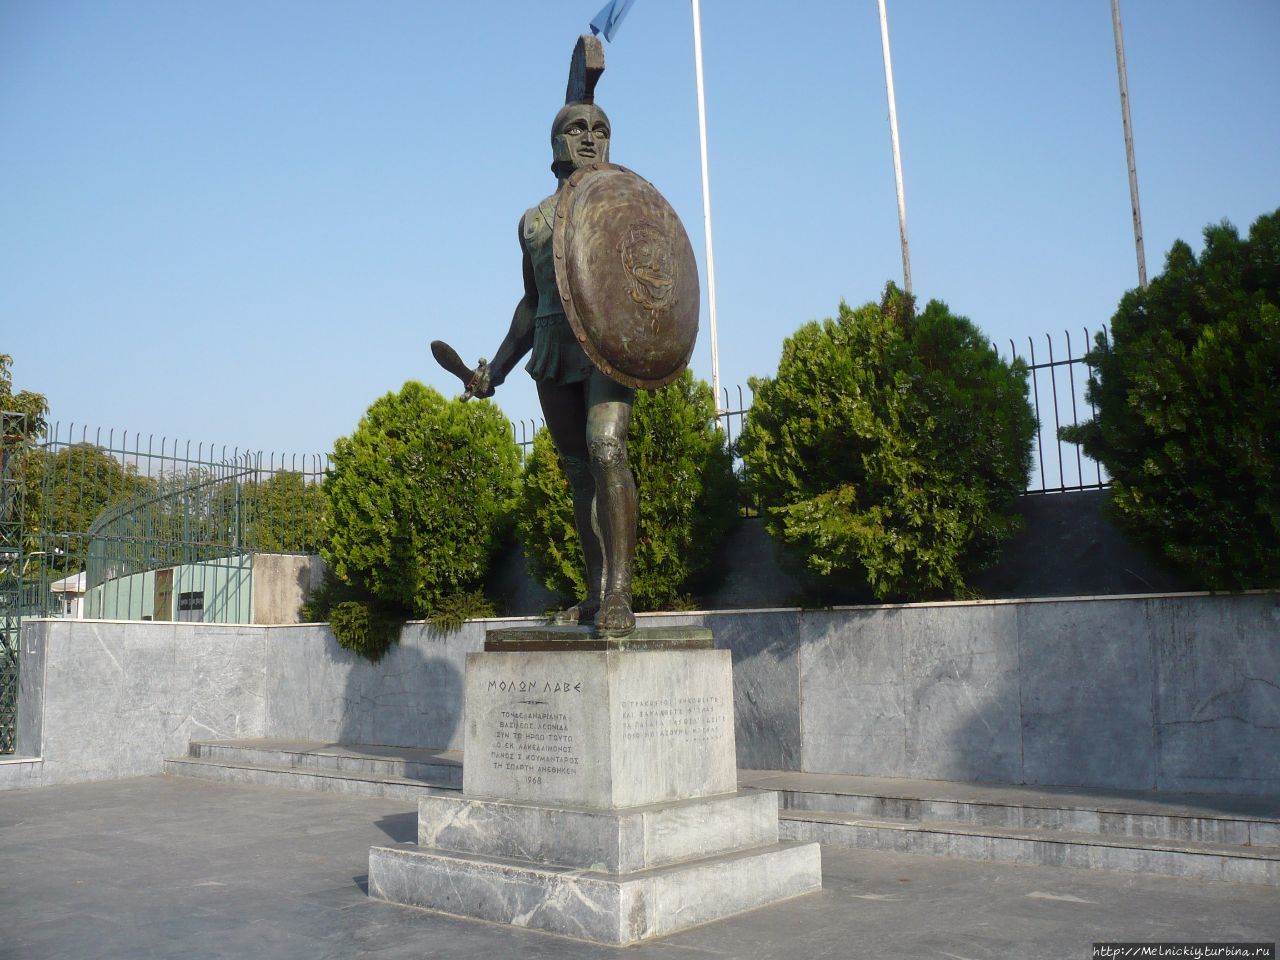 Памятник царю Леониду / Statue of Leonidas